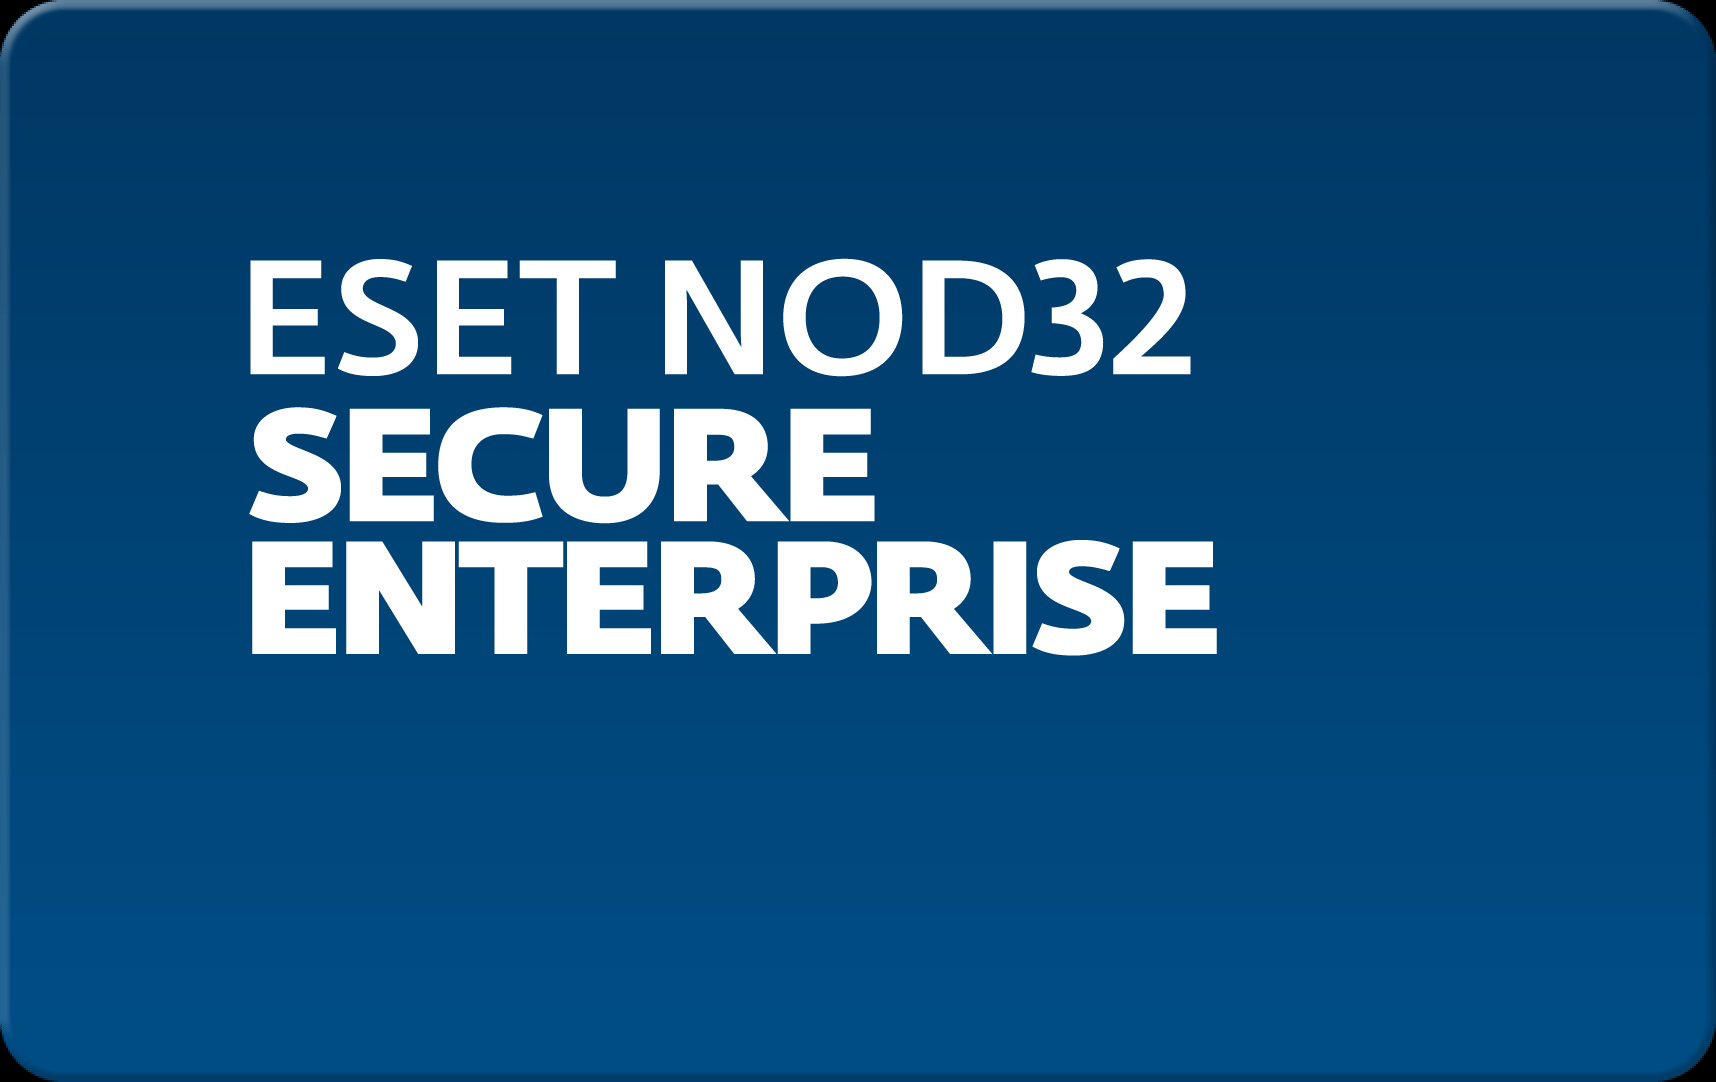        Eset NOD32 Secure Enterprise  165 